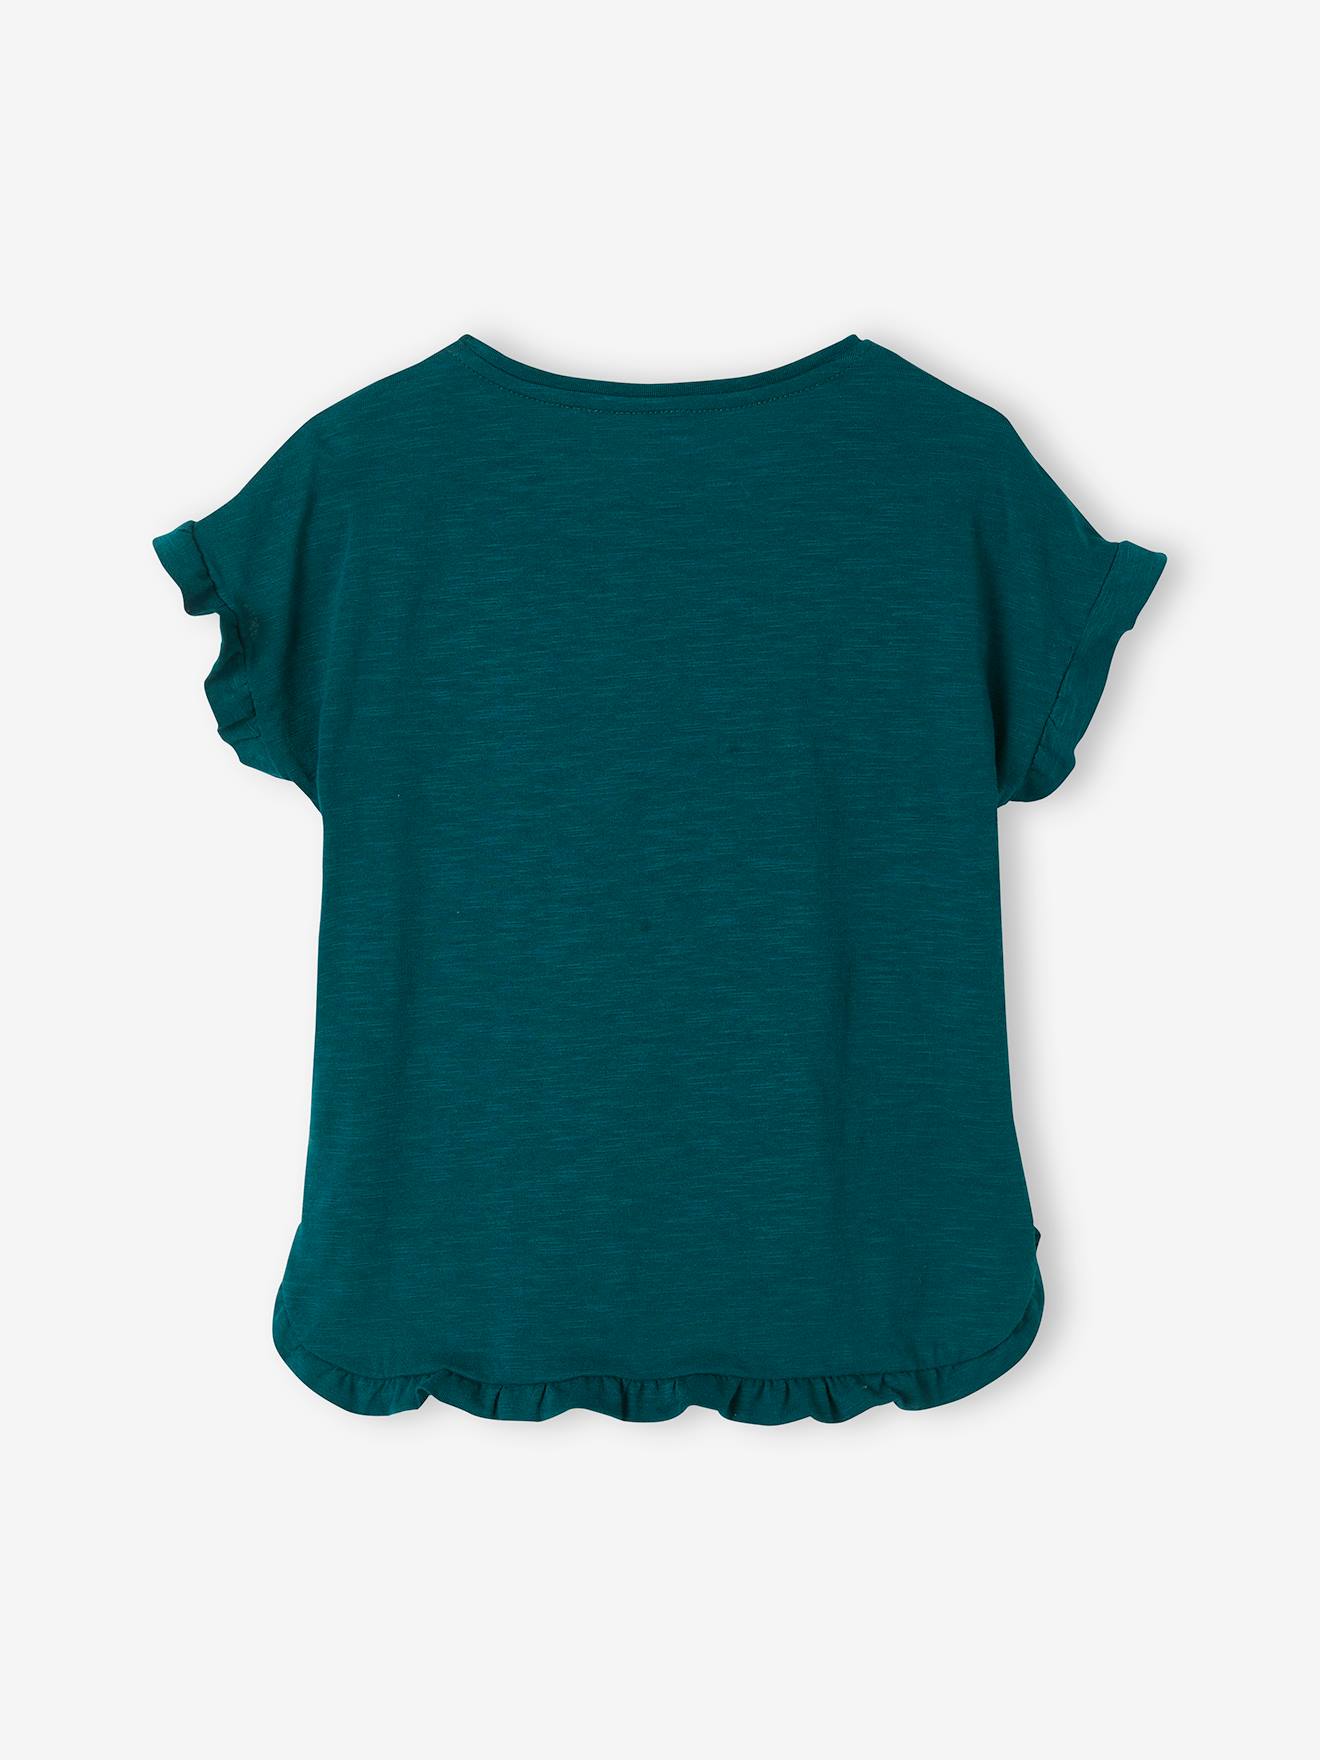 Camiseta con volantes para niña verde sauce - Vertbaudet